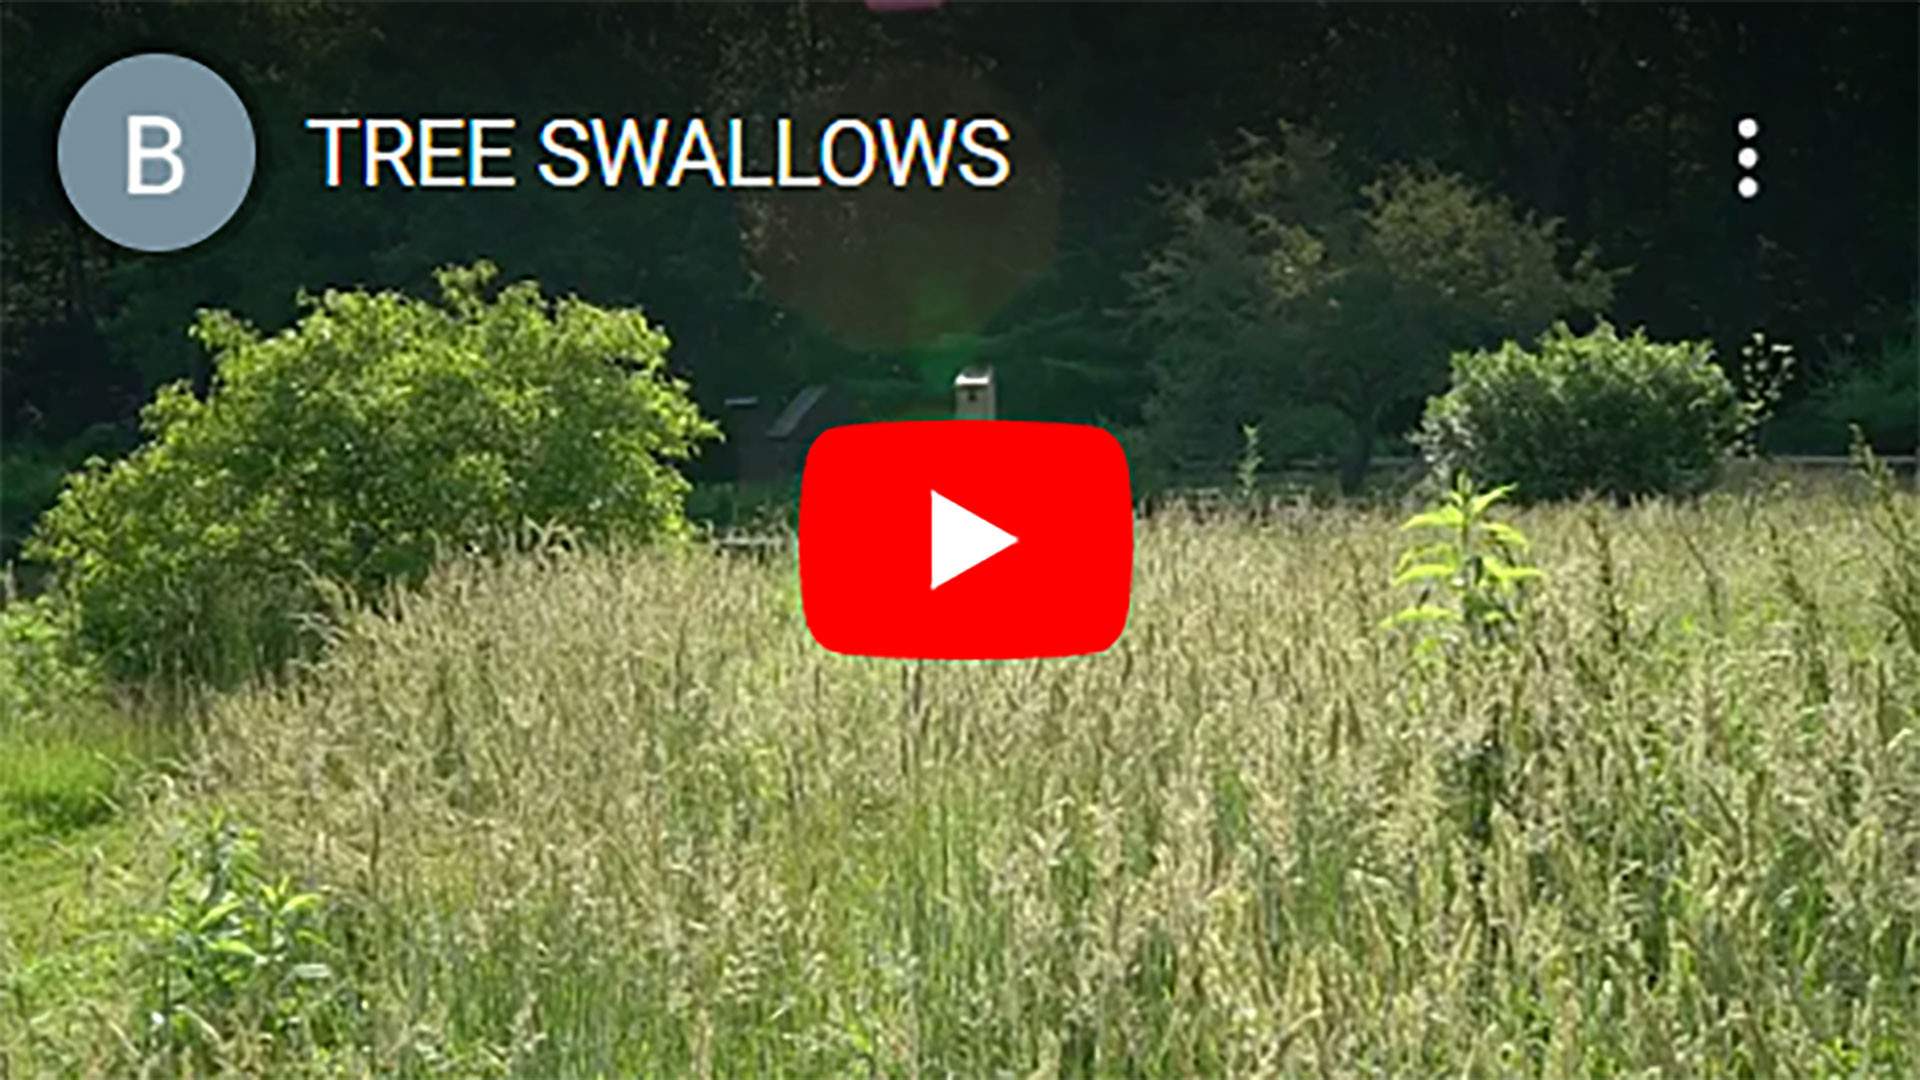 TREE-SWALLOWS